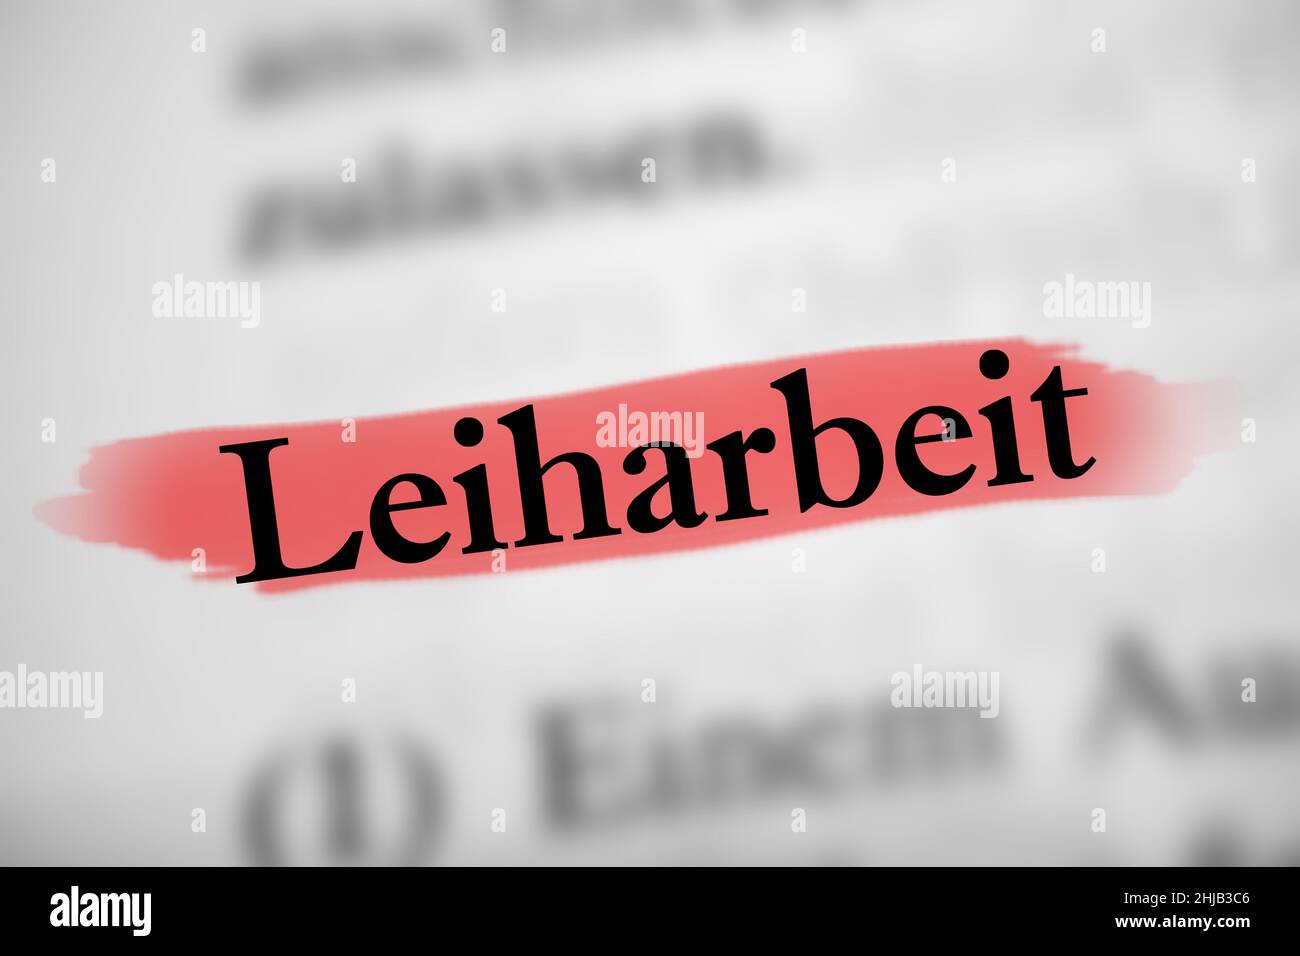 Illustrazione della parola tedesca Leihartbeit che significa lavoro temporaneo sul Libro bianco Foto Stock